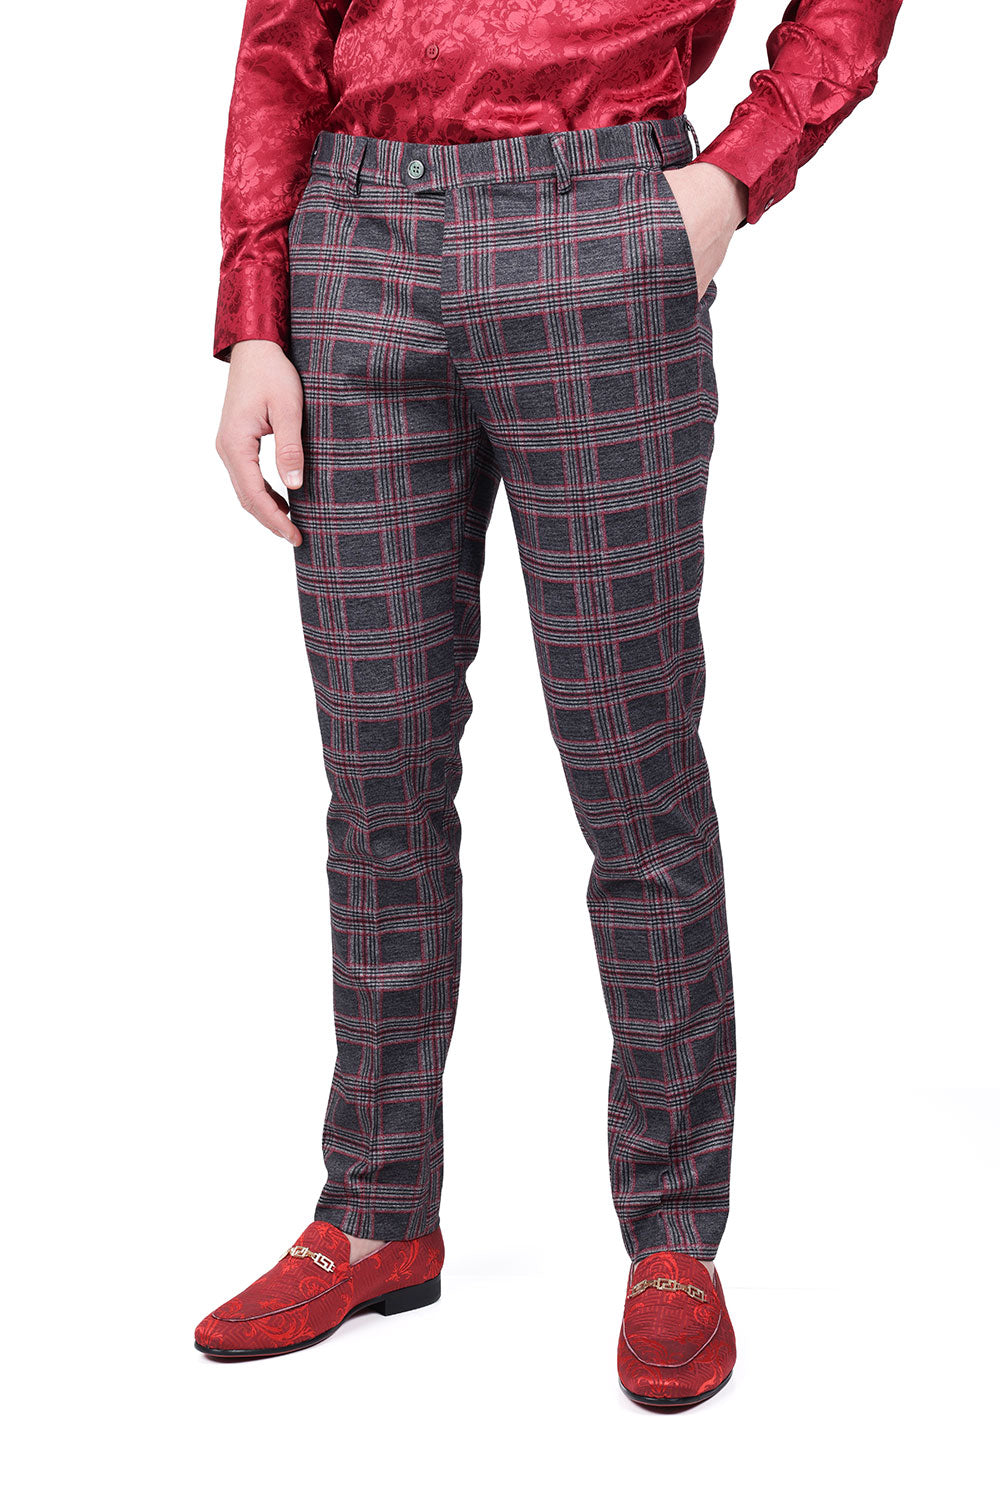 BARABAS men's checkered plaid grey and pink chino pants CP157